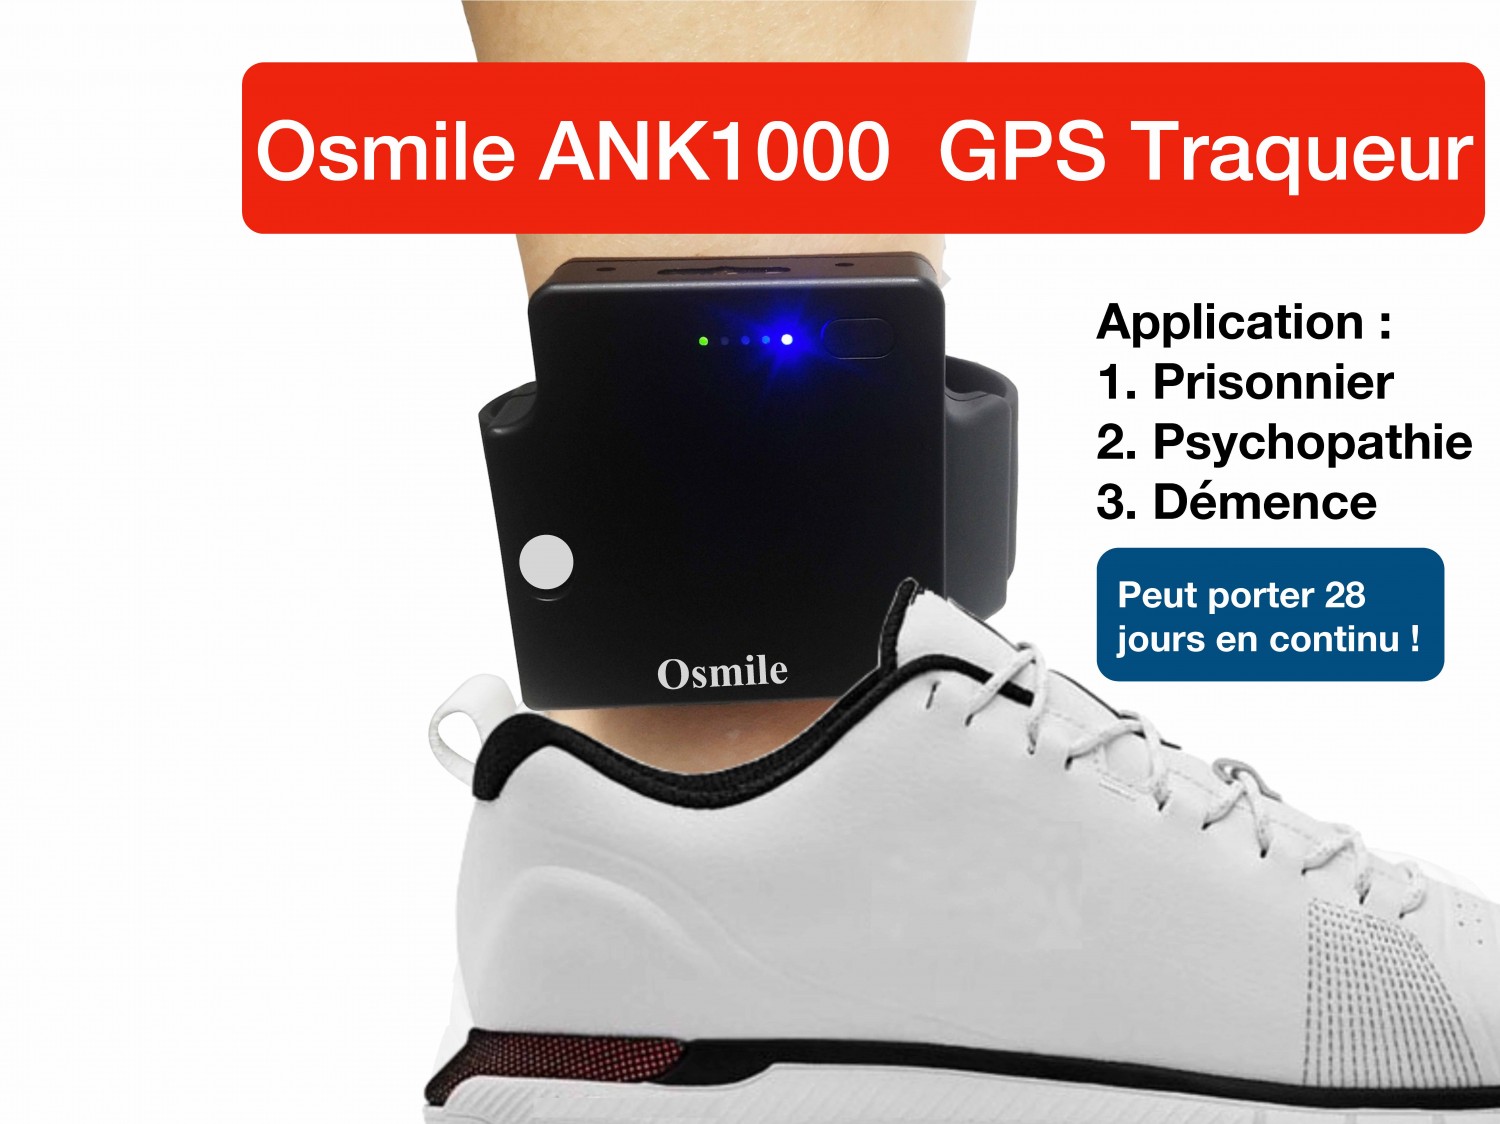 Osmile ANK1000 est un traqueur GPS de cheville conçu pour les prisonniers, les psychopathes, les personnes atteintes de démence et d'Alzheimer. Il peut être utilisé en continu pendant 10 jours